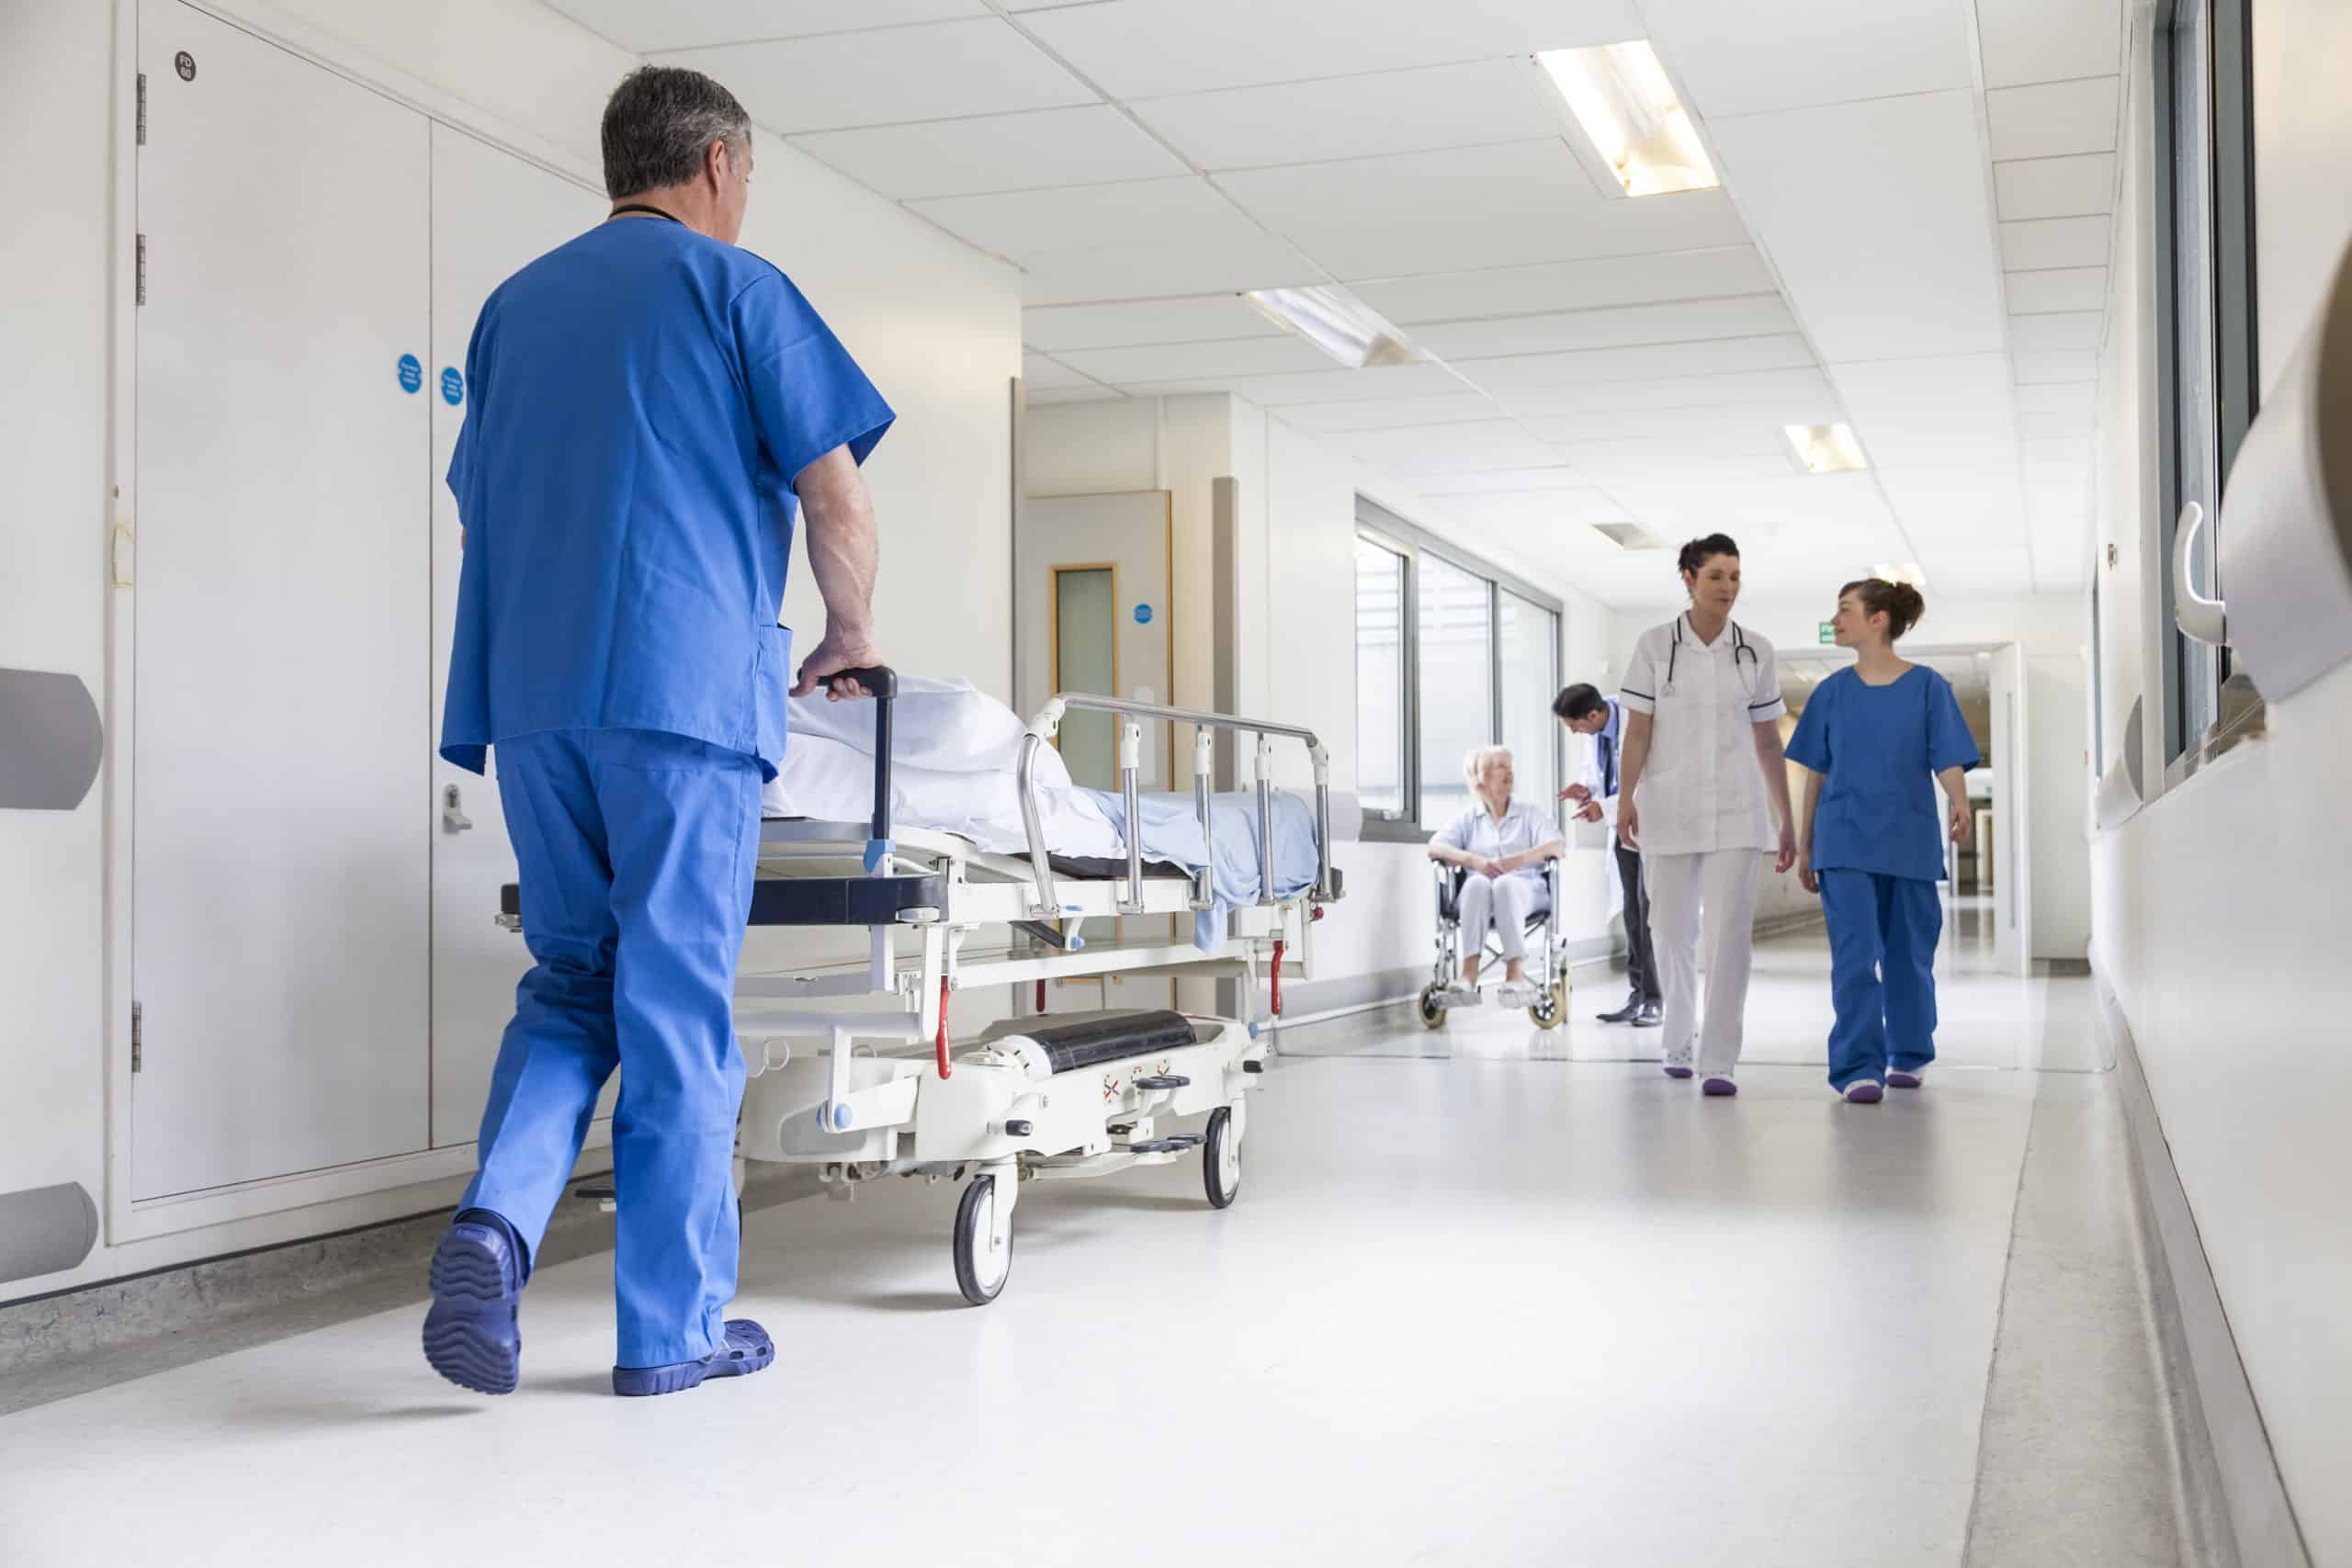 Sykehuskorridor med mannlig sykepleier som triller en sengepasient til behandling, andre sykepleiere i bakgrunnen